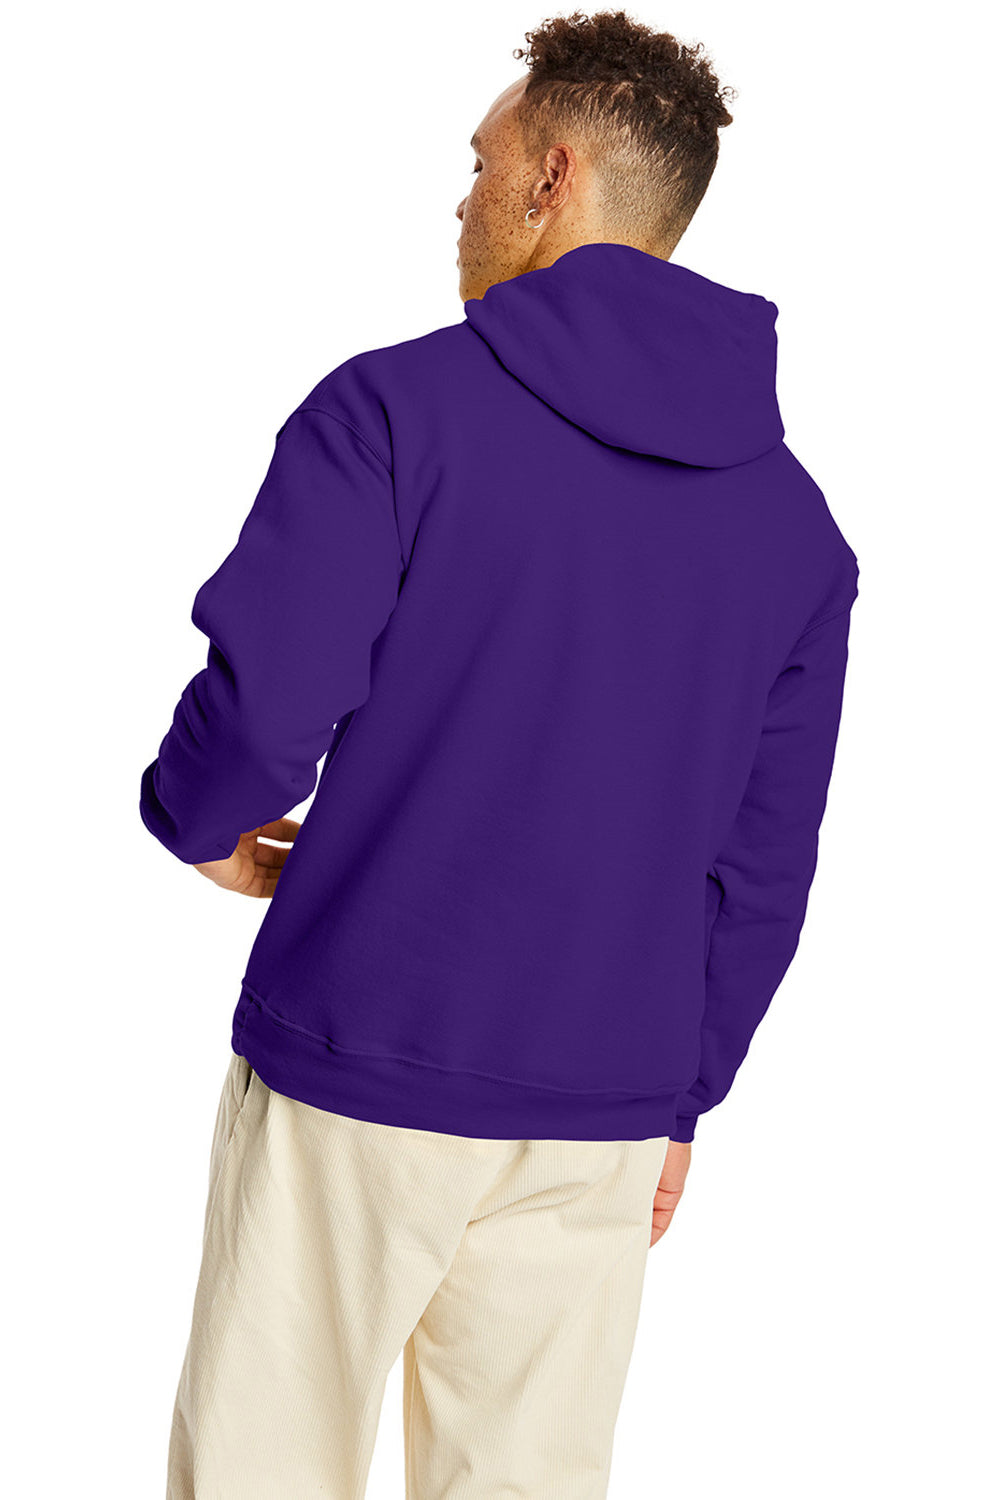 Hanes P170 Mens EcoSmart Print Pro XP Hooded Sweatshirt Hoodie Athletic Purple Back